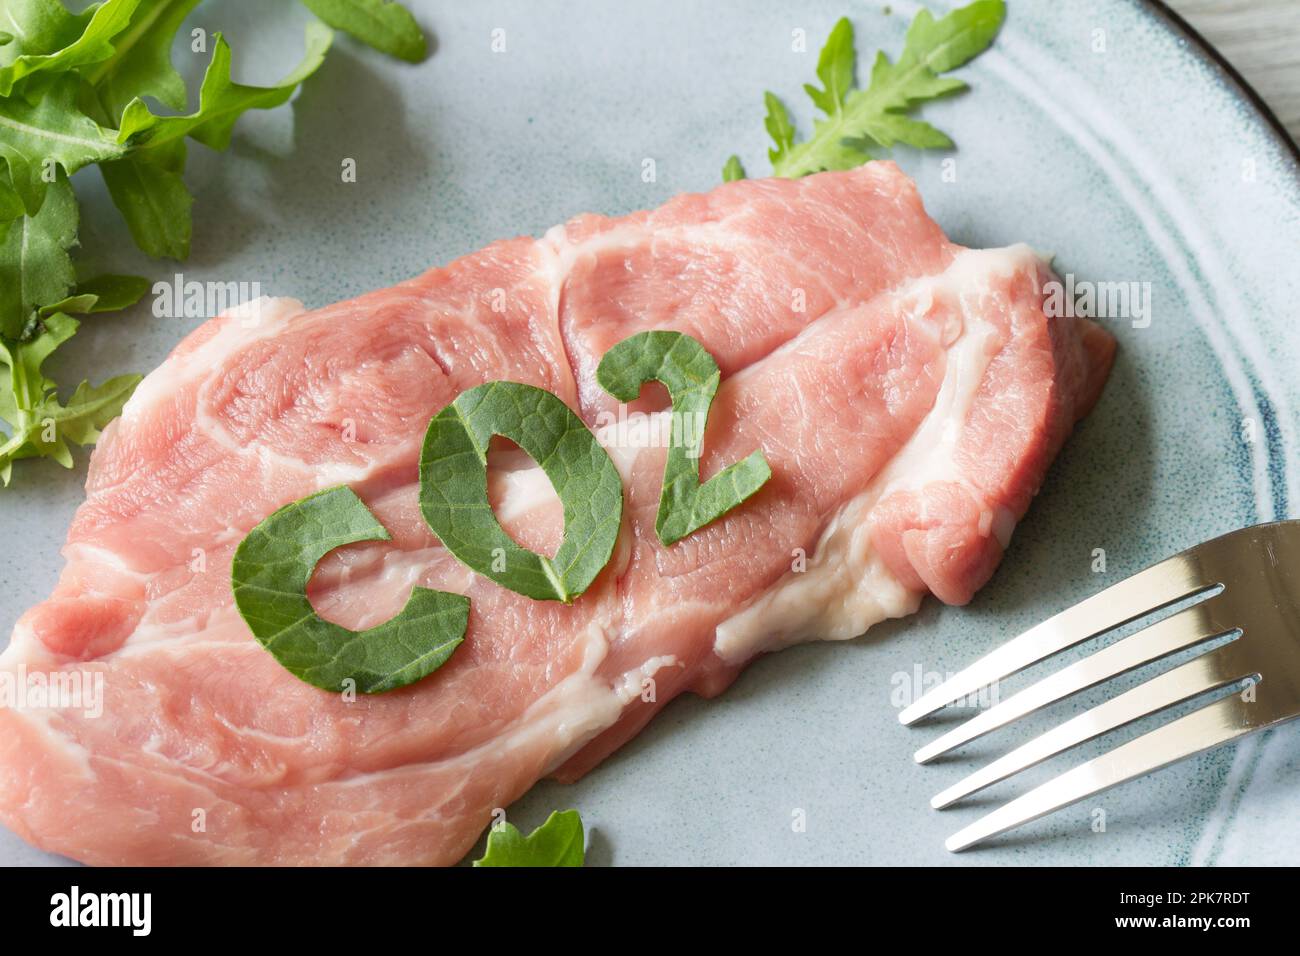 Production de viande et problème mondial avec les émissions CO2, concept d'empreinte carbone avec steak de porc sur plaque Banque D'Images